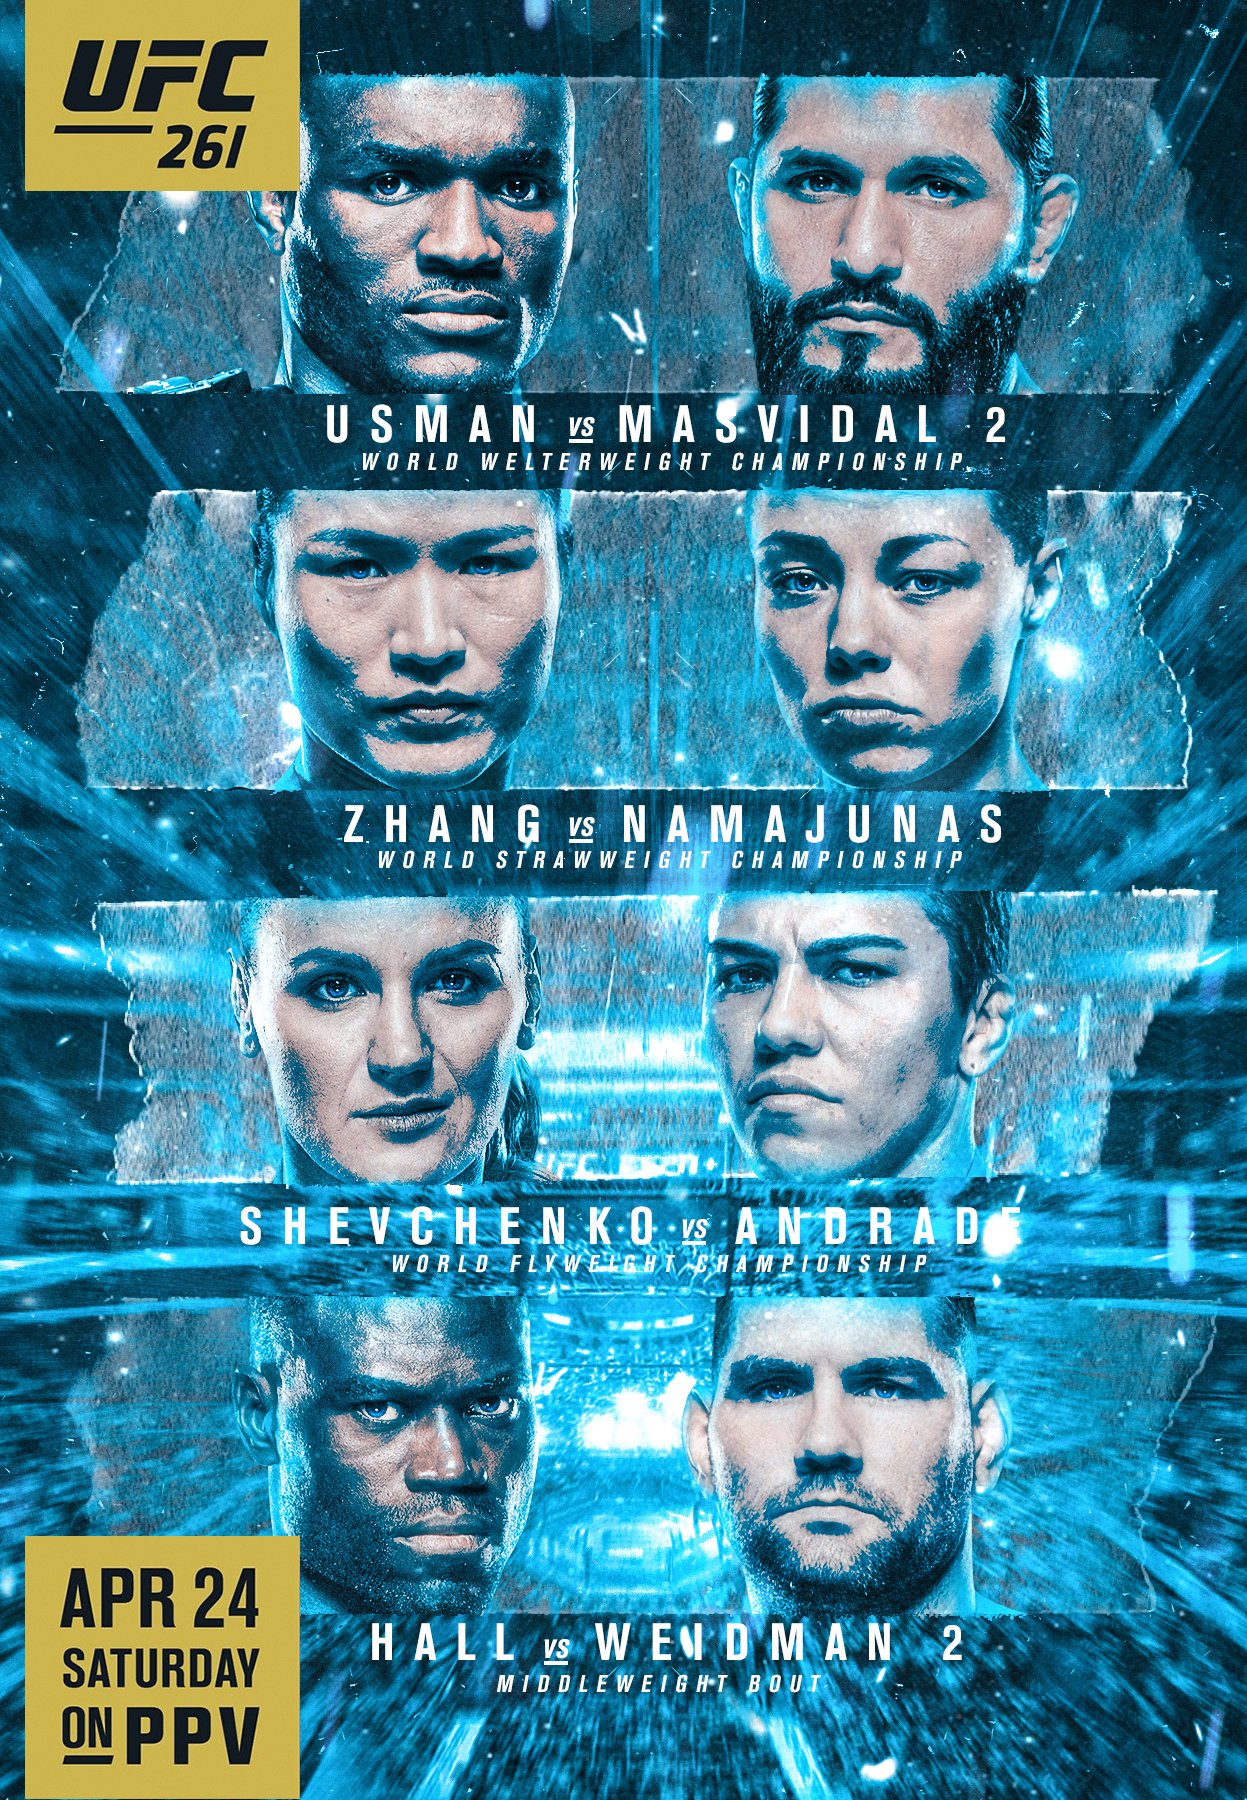 UFC 262 - Las Vegas - Poster et affiche